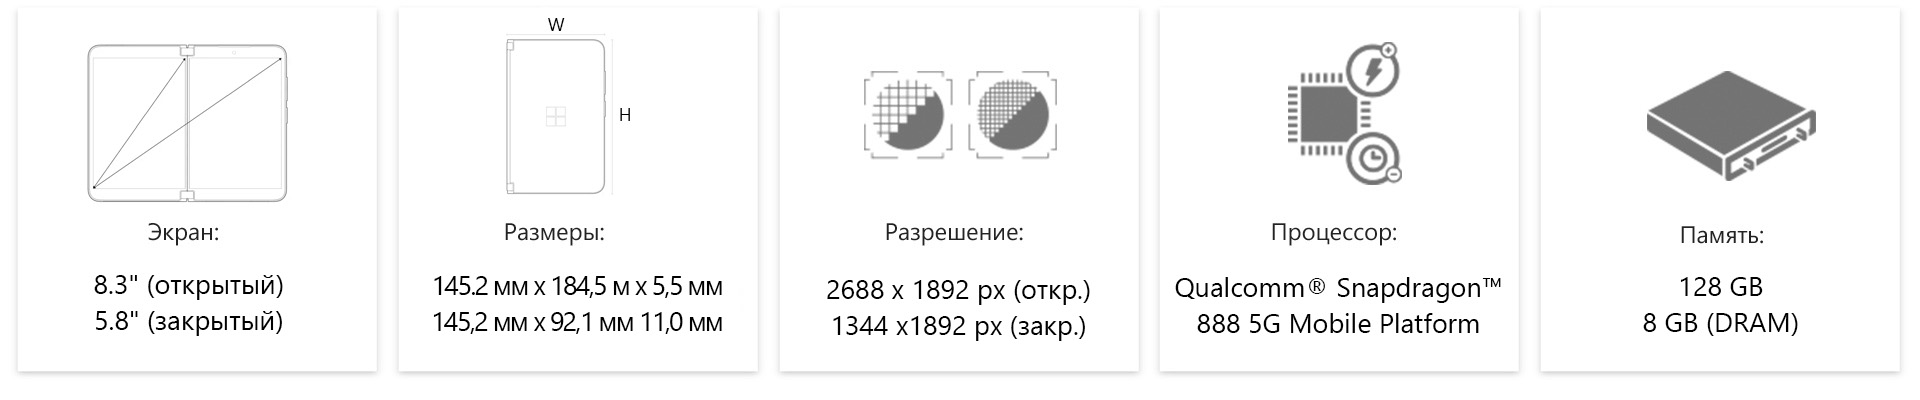 Характеристики Surface Duo 2 8 GB 128 GB